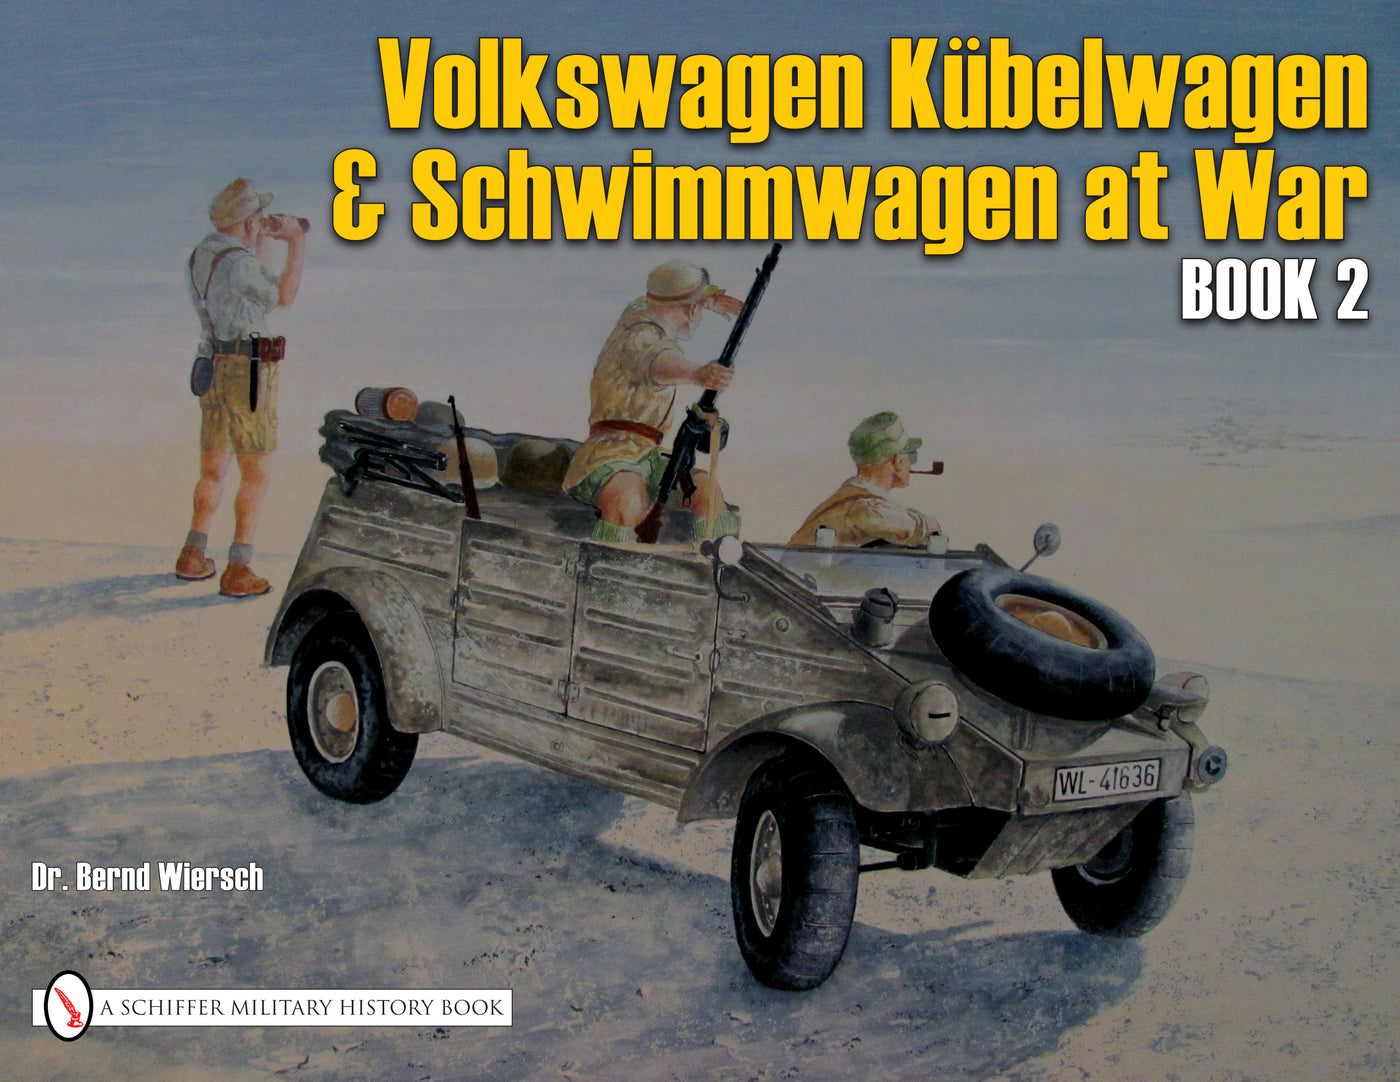 VW at War